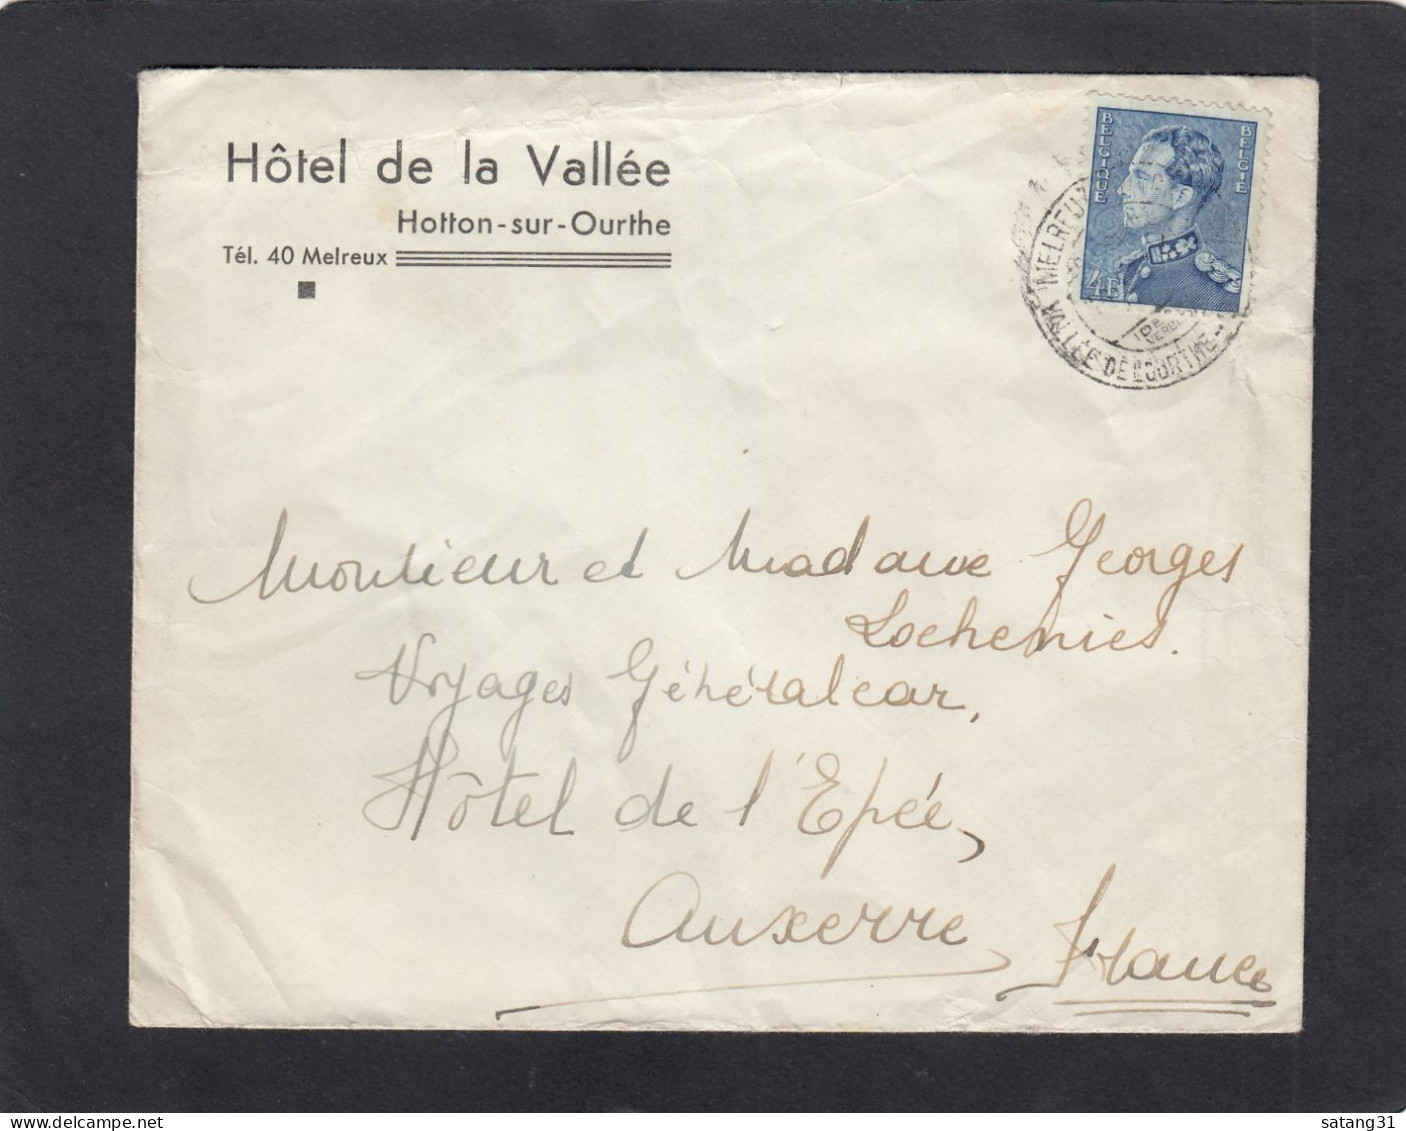 HOTEL DE LA VALLEE, HOTTON SUR OURTHE. - Briefe U. Dokumente